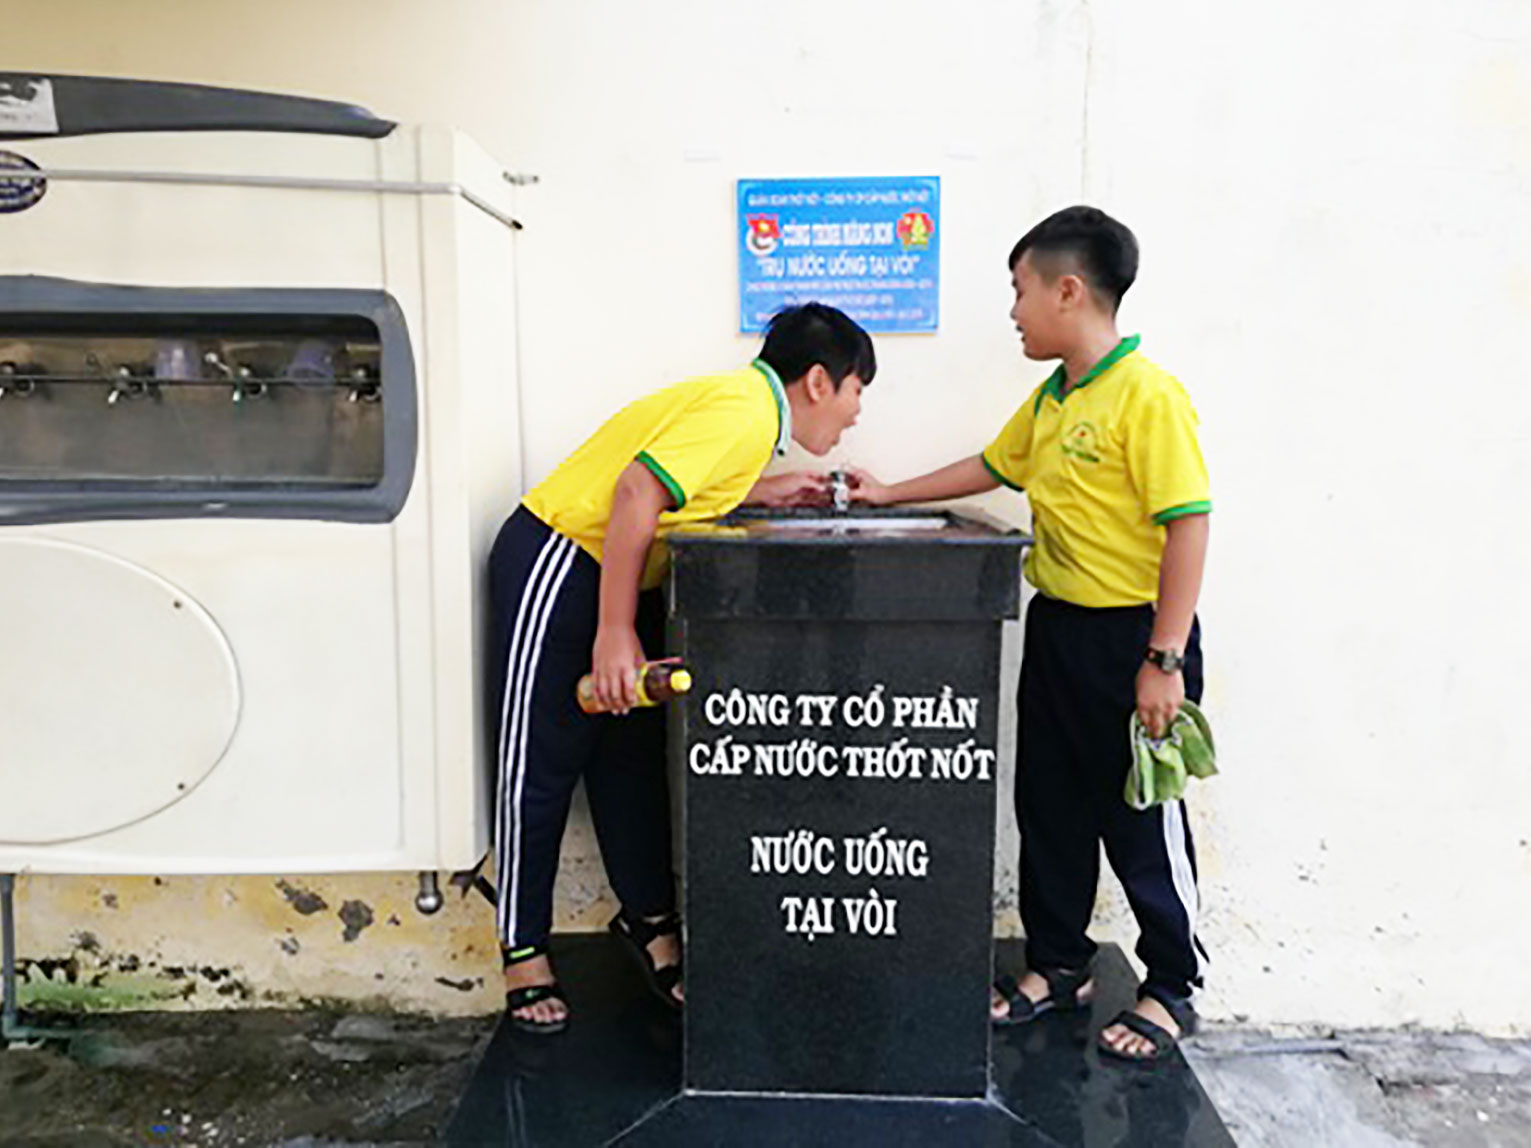 Trụ nước uống tại vòi vừa được khánh thành và đưa vào sử dụng tại Trường THCS Thới Thuận. Ảnh: HÀ VĂN